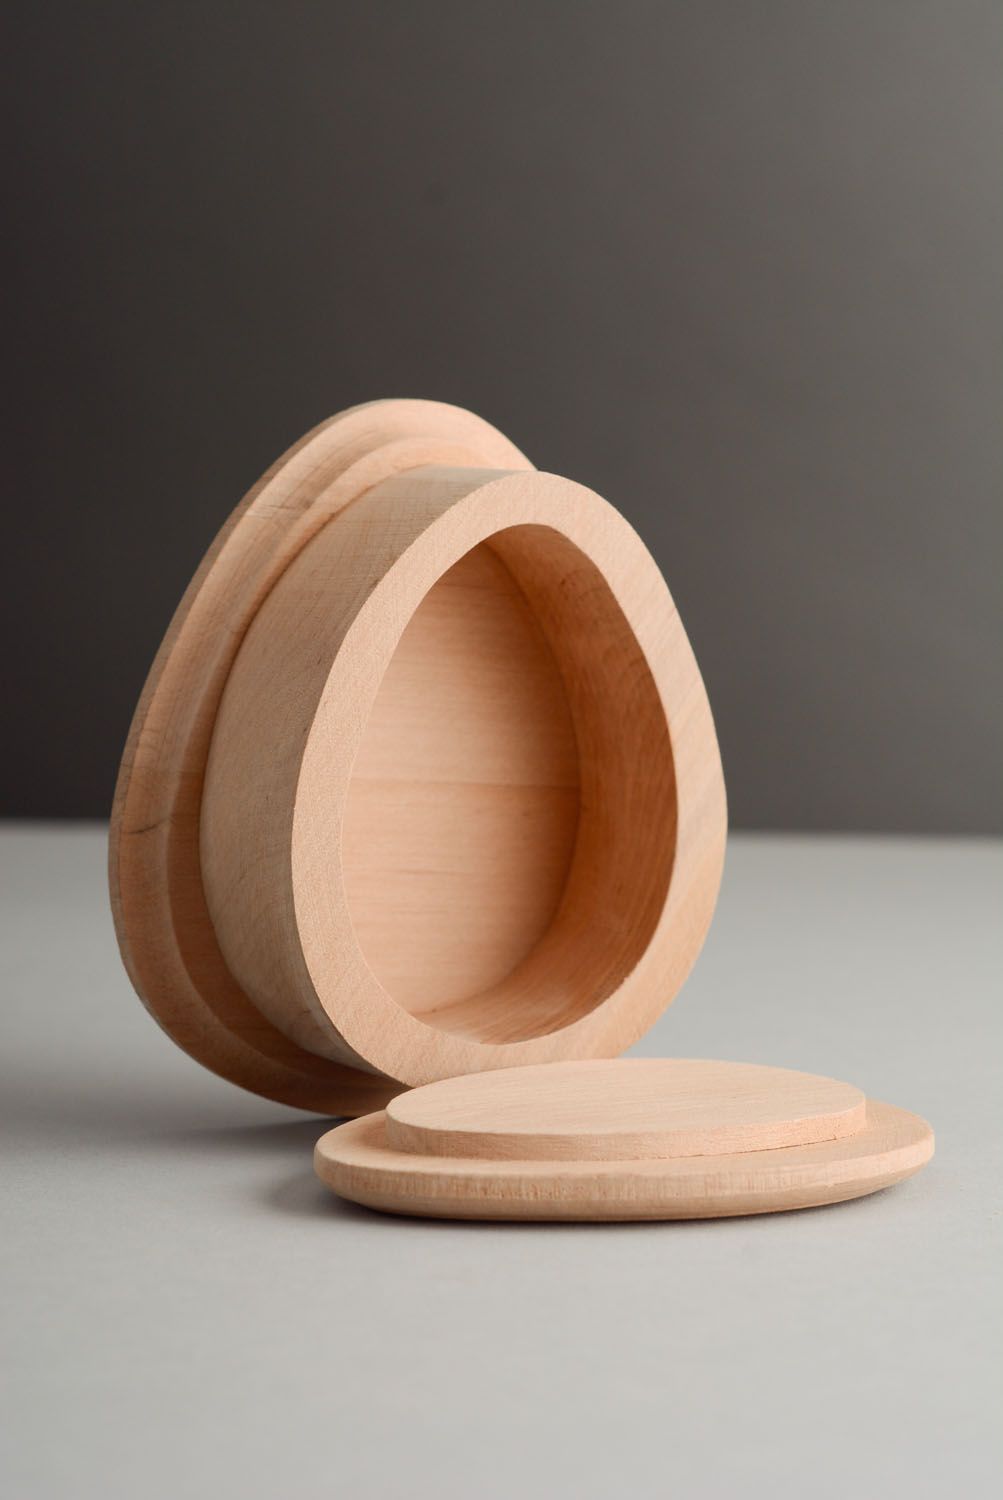 Cajita de madera con forma del huevo foto 1